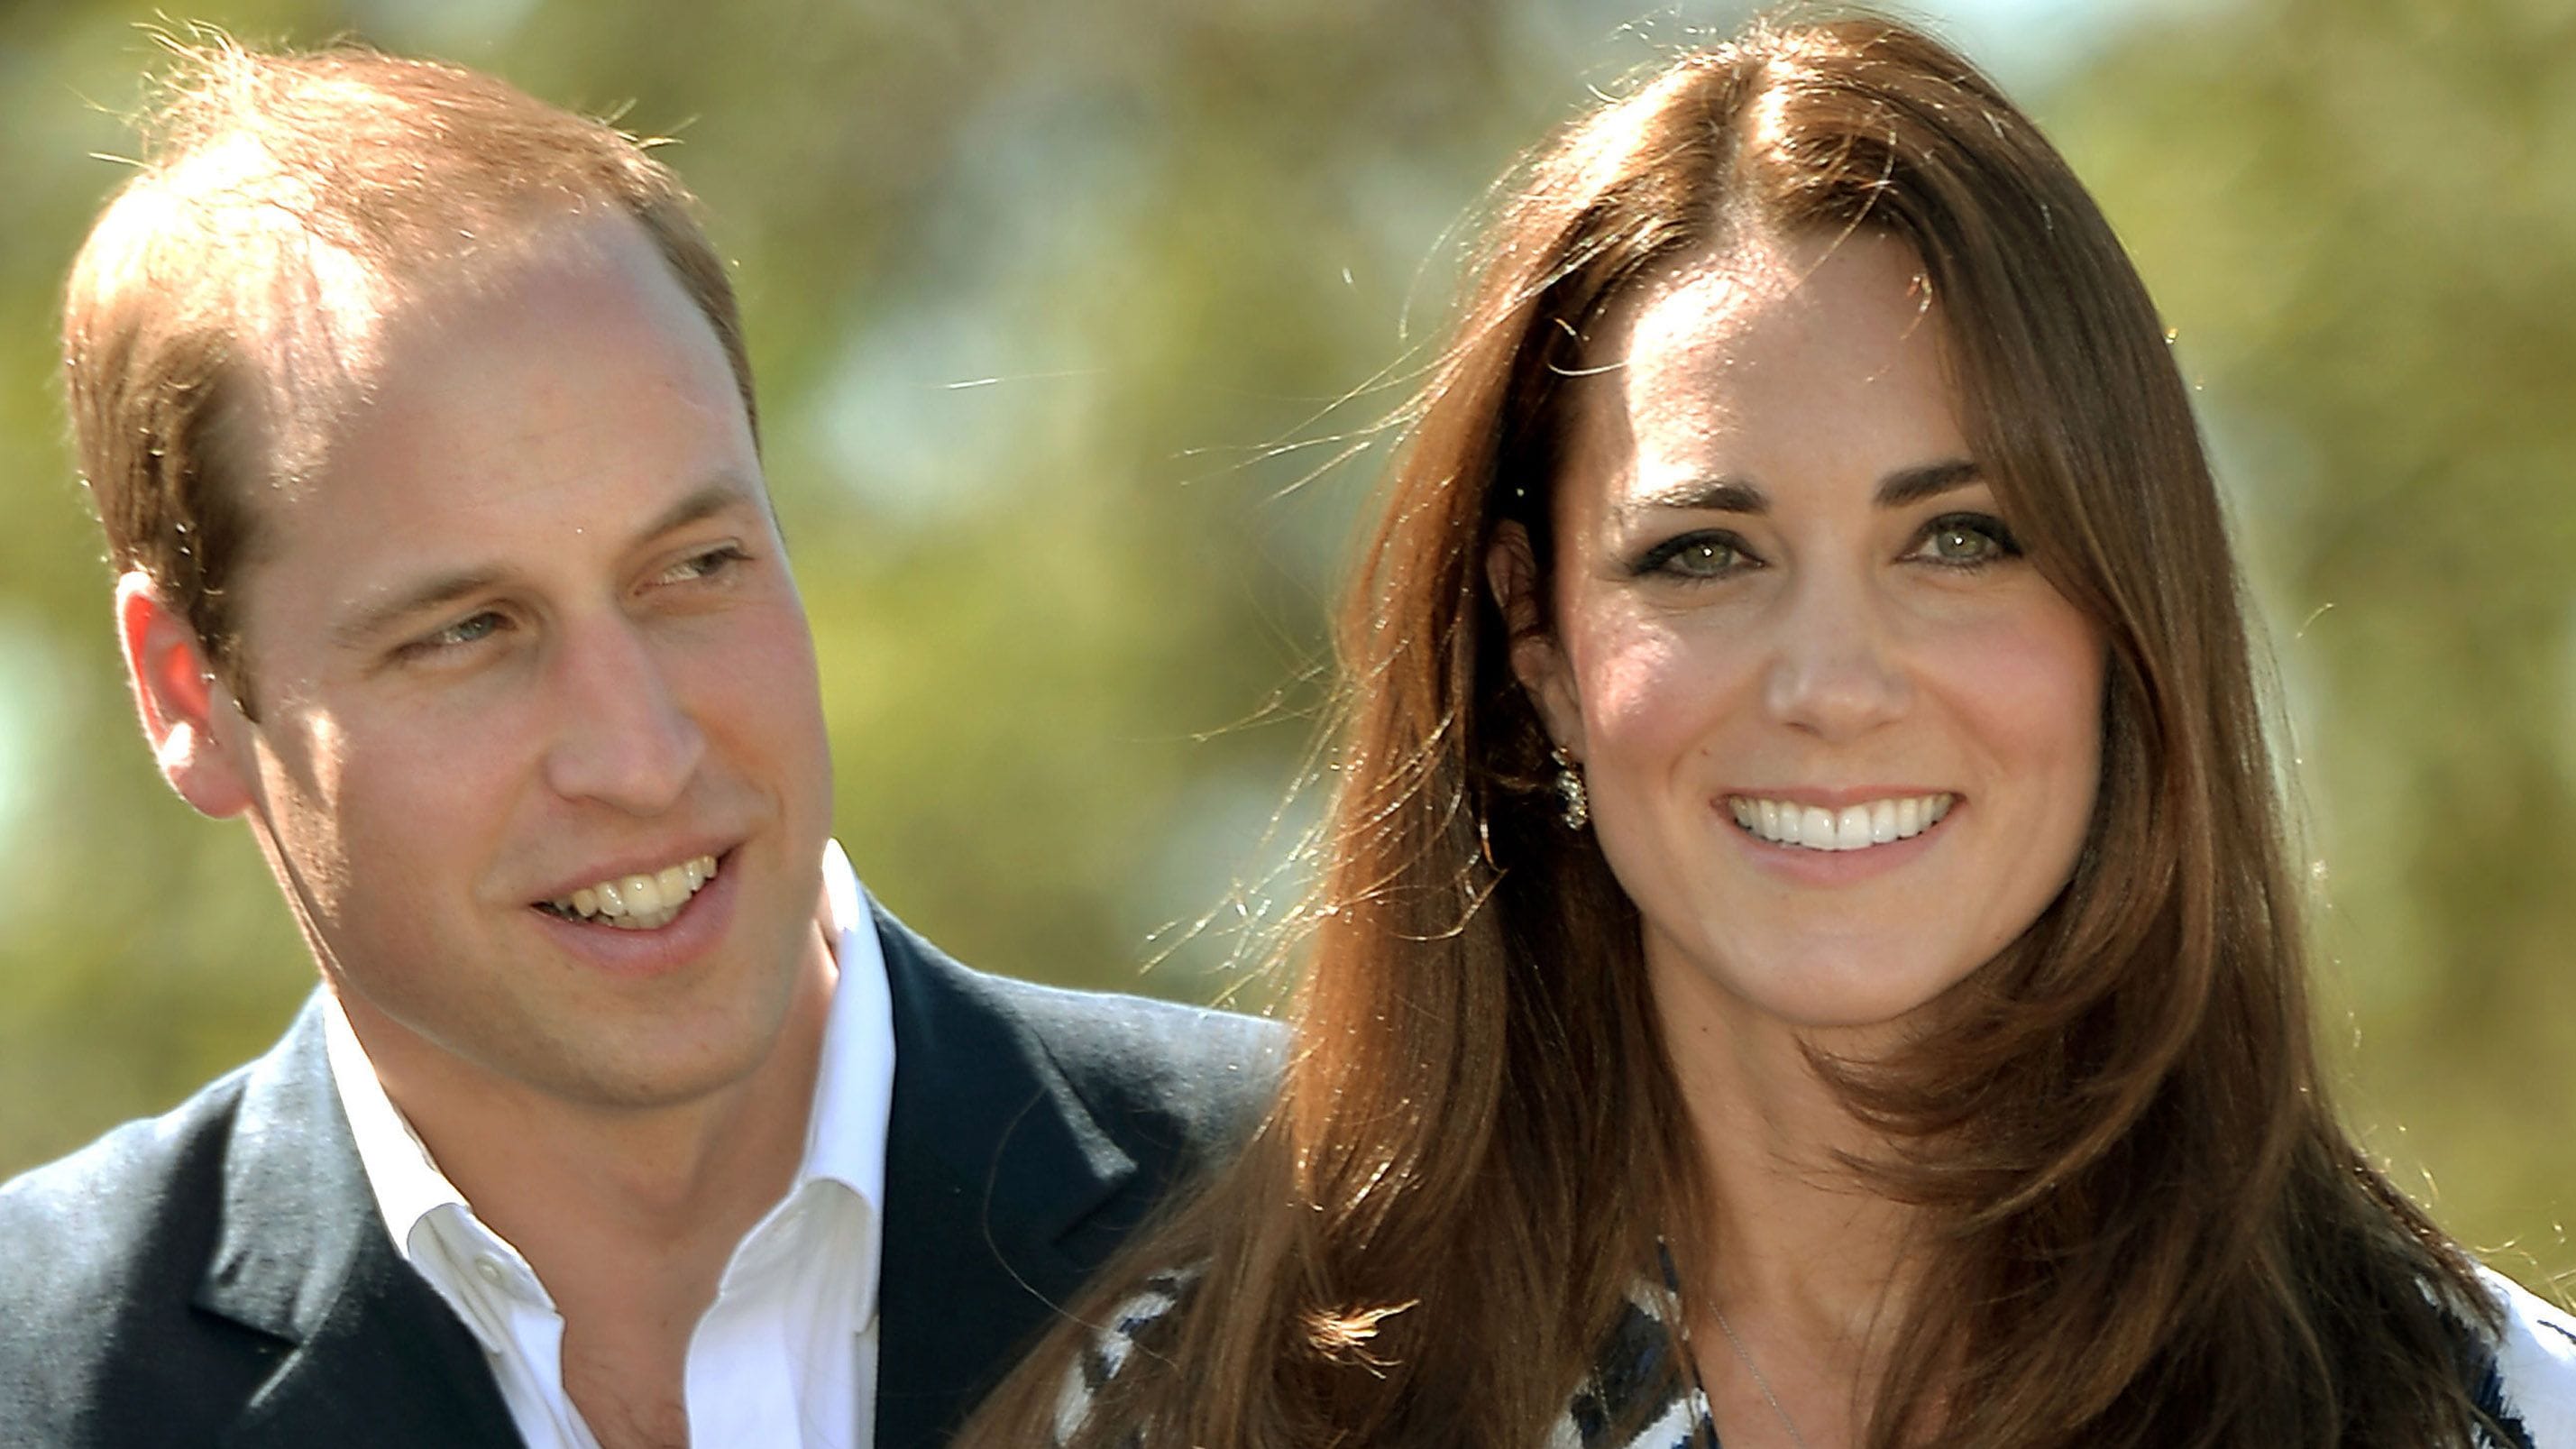 Prinz William spricht über Zustand seiner krebskranken Frau Kate